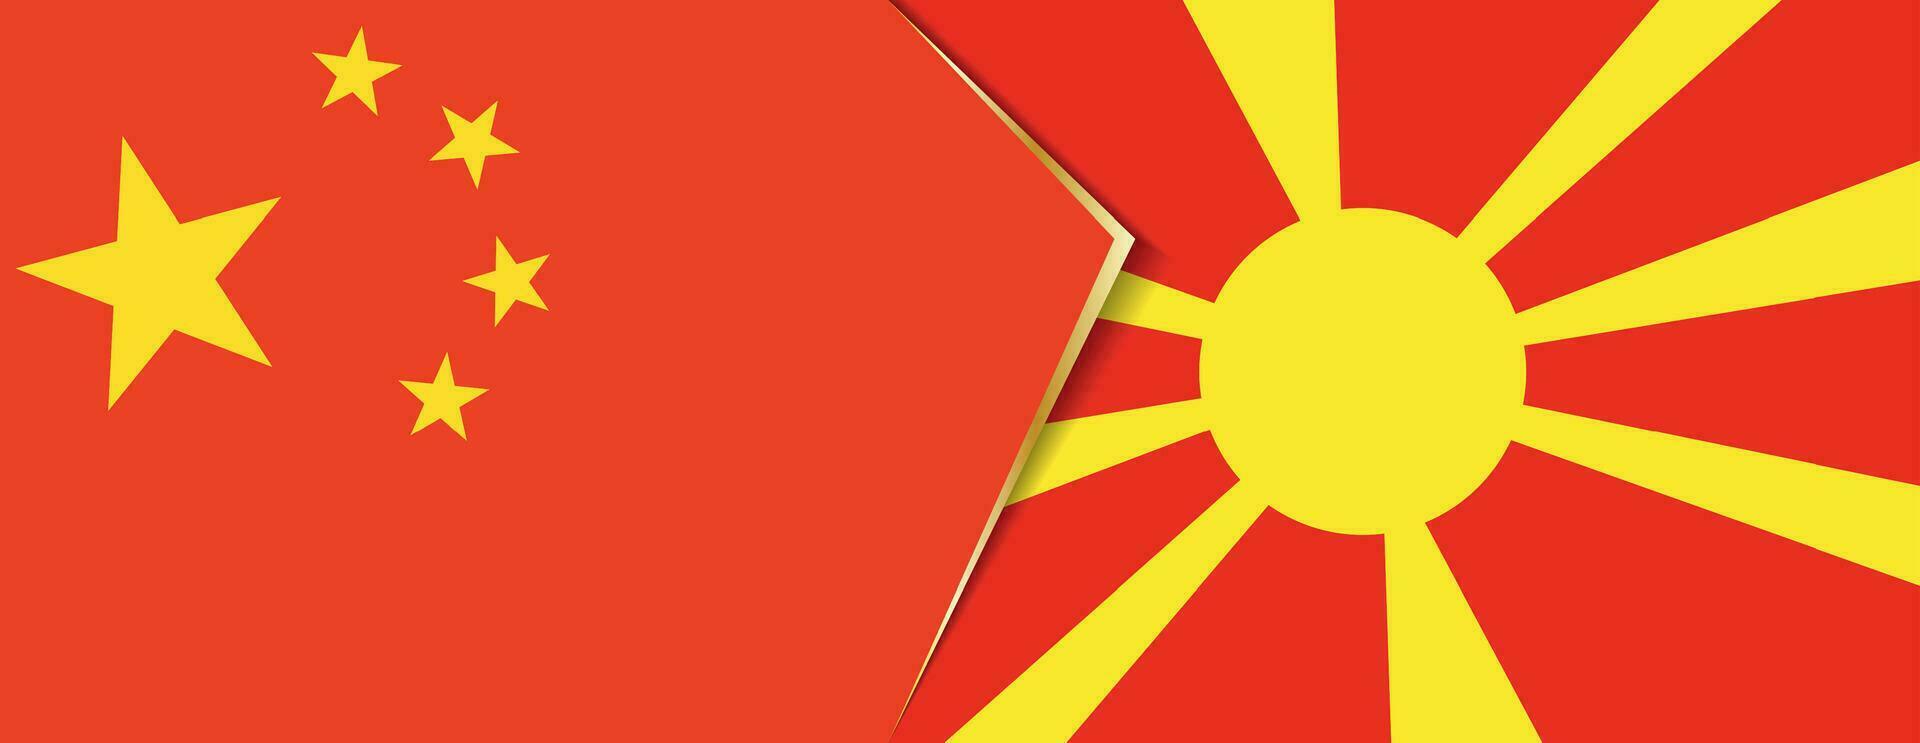 China y macedonia banderas, dos vector banderas